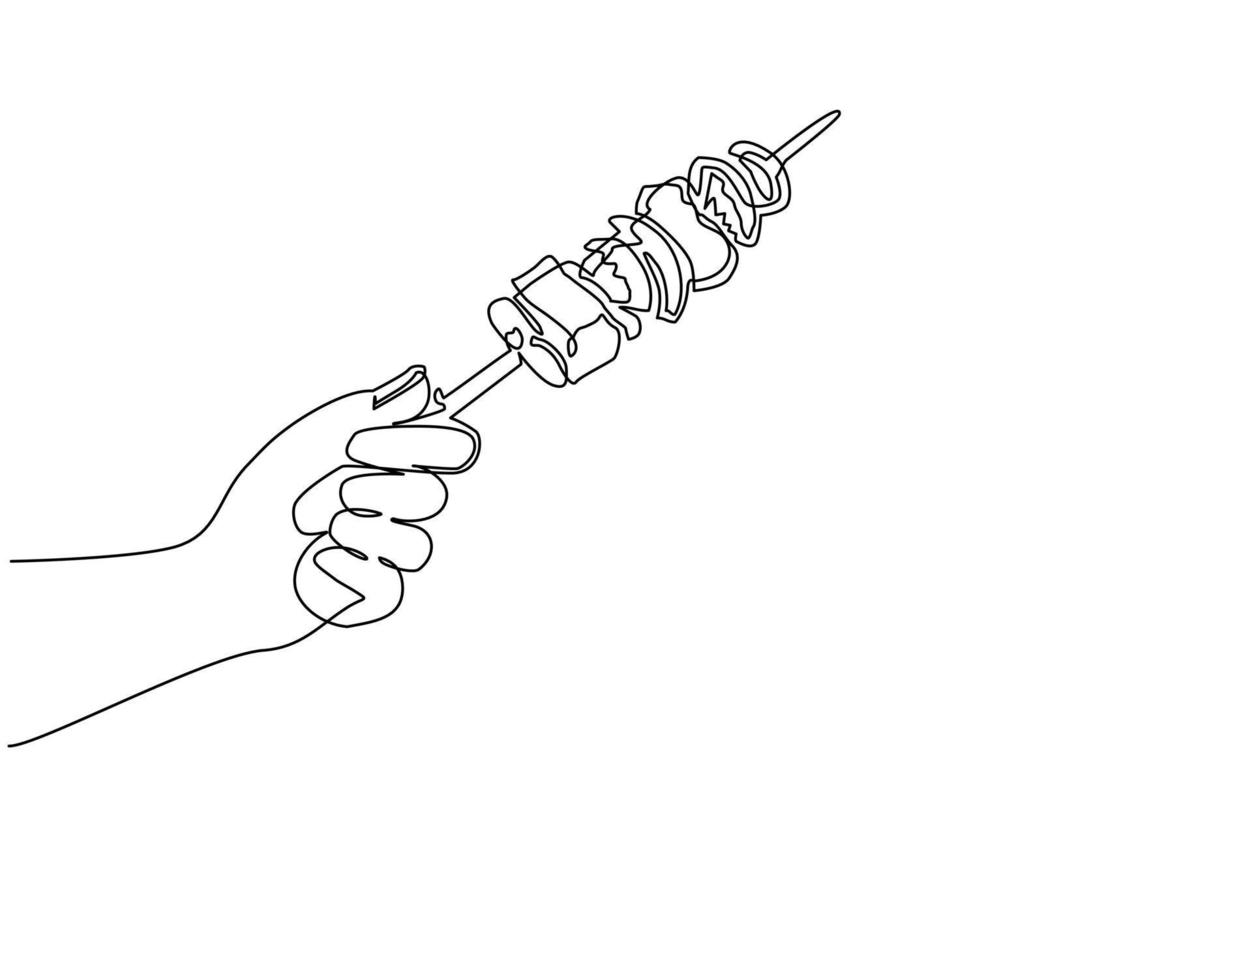 uma linha contínua desenhando a mão humana segurando o kebab. mão segurando espetos com carne assada. churrasco de comida tradicional, bifes, kebab ou shashlik. ilustração gráfica de vetor de desenho de linha única